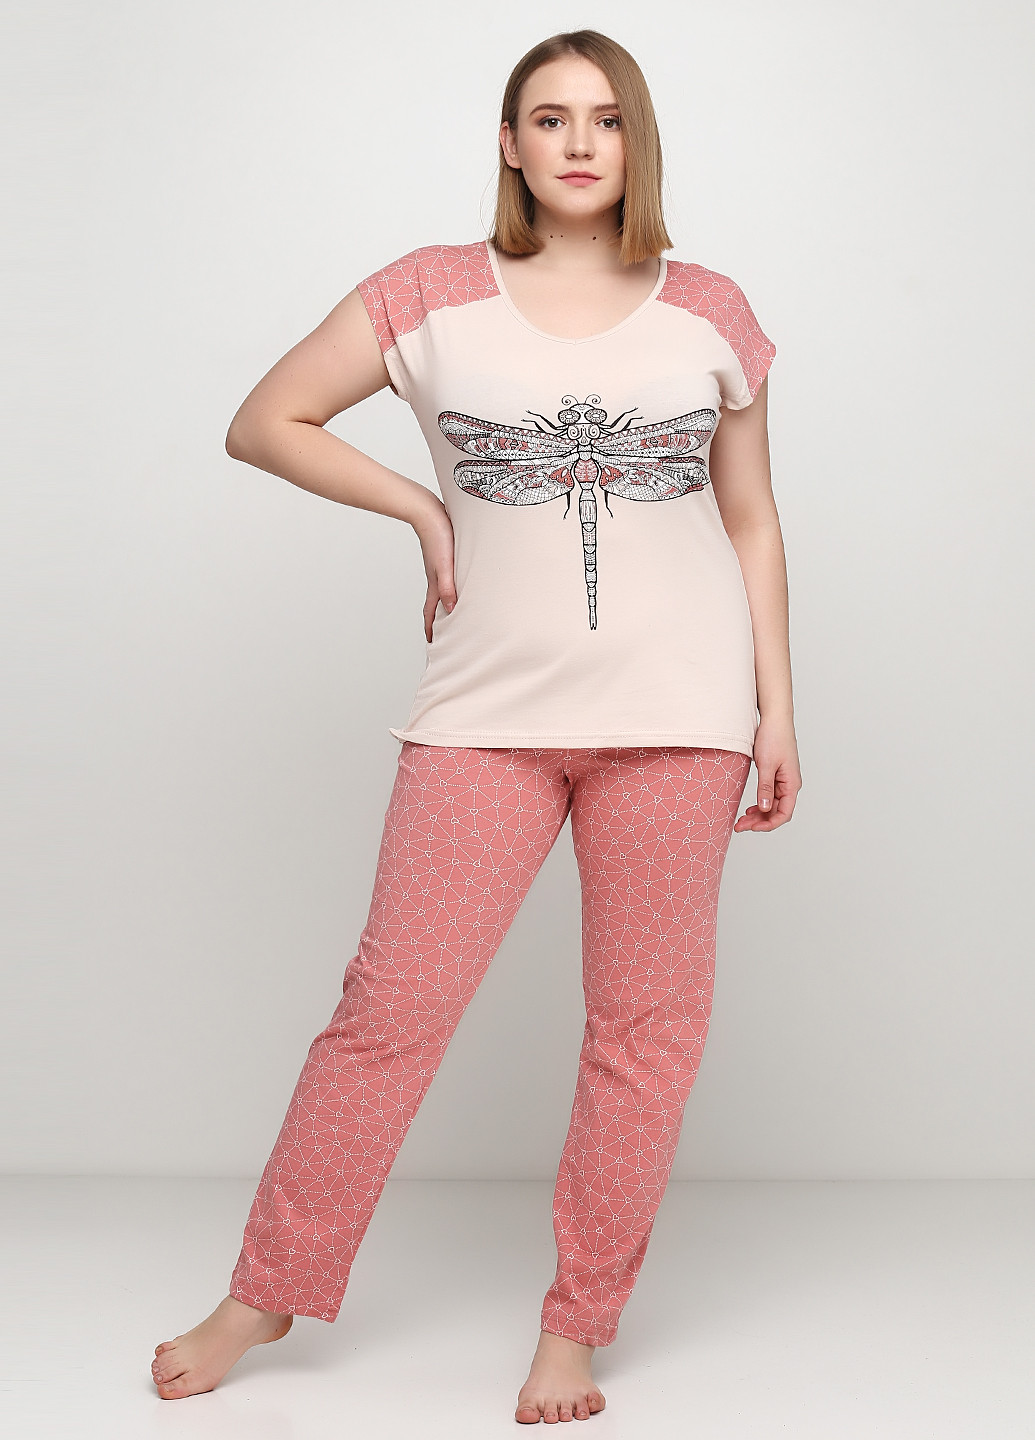 Персиковая всесезон пижама (футболка, брюки) футболка + брюки Sexen